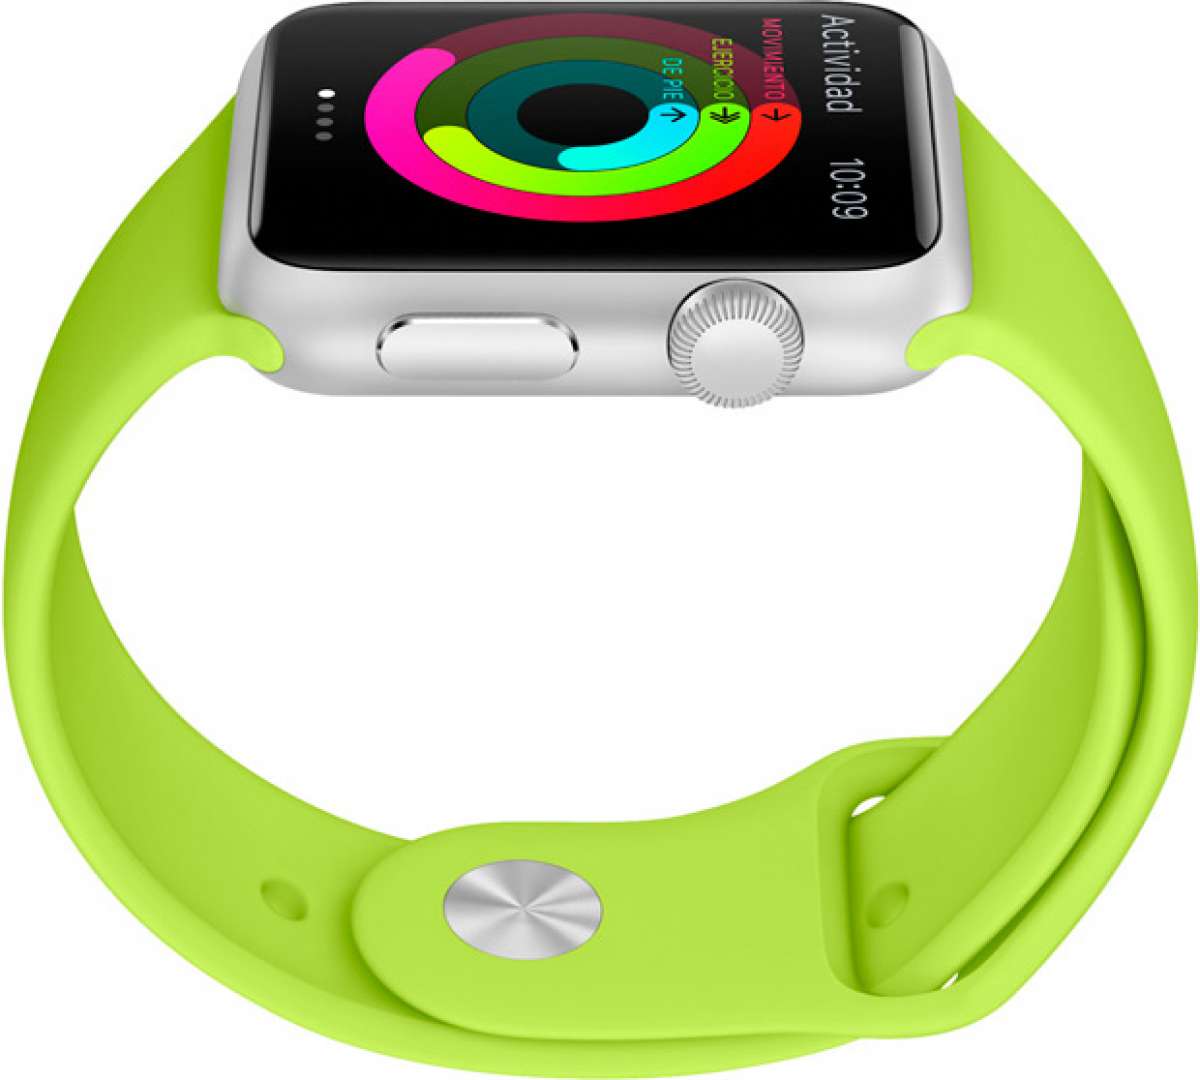 Un completo repaso al Apple Watch, el reloj inteligente de la firma de la manzana